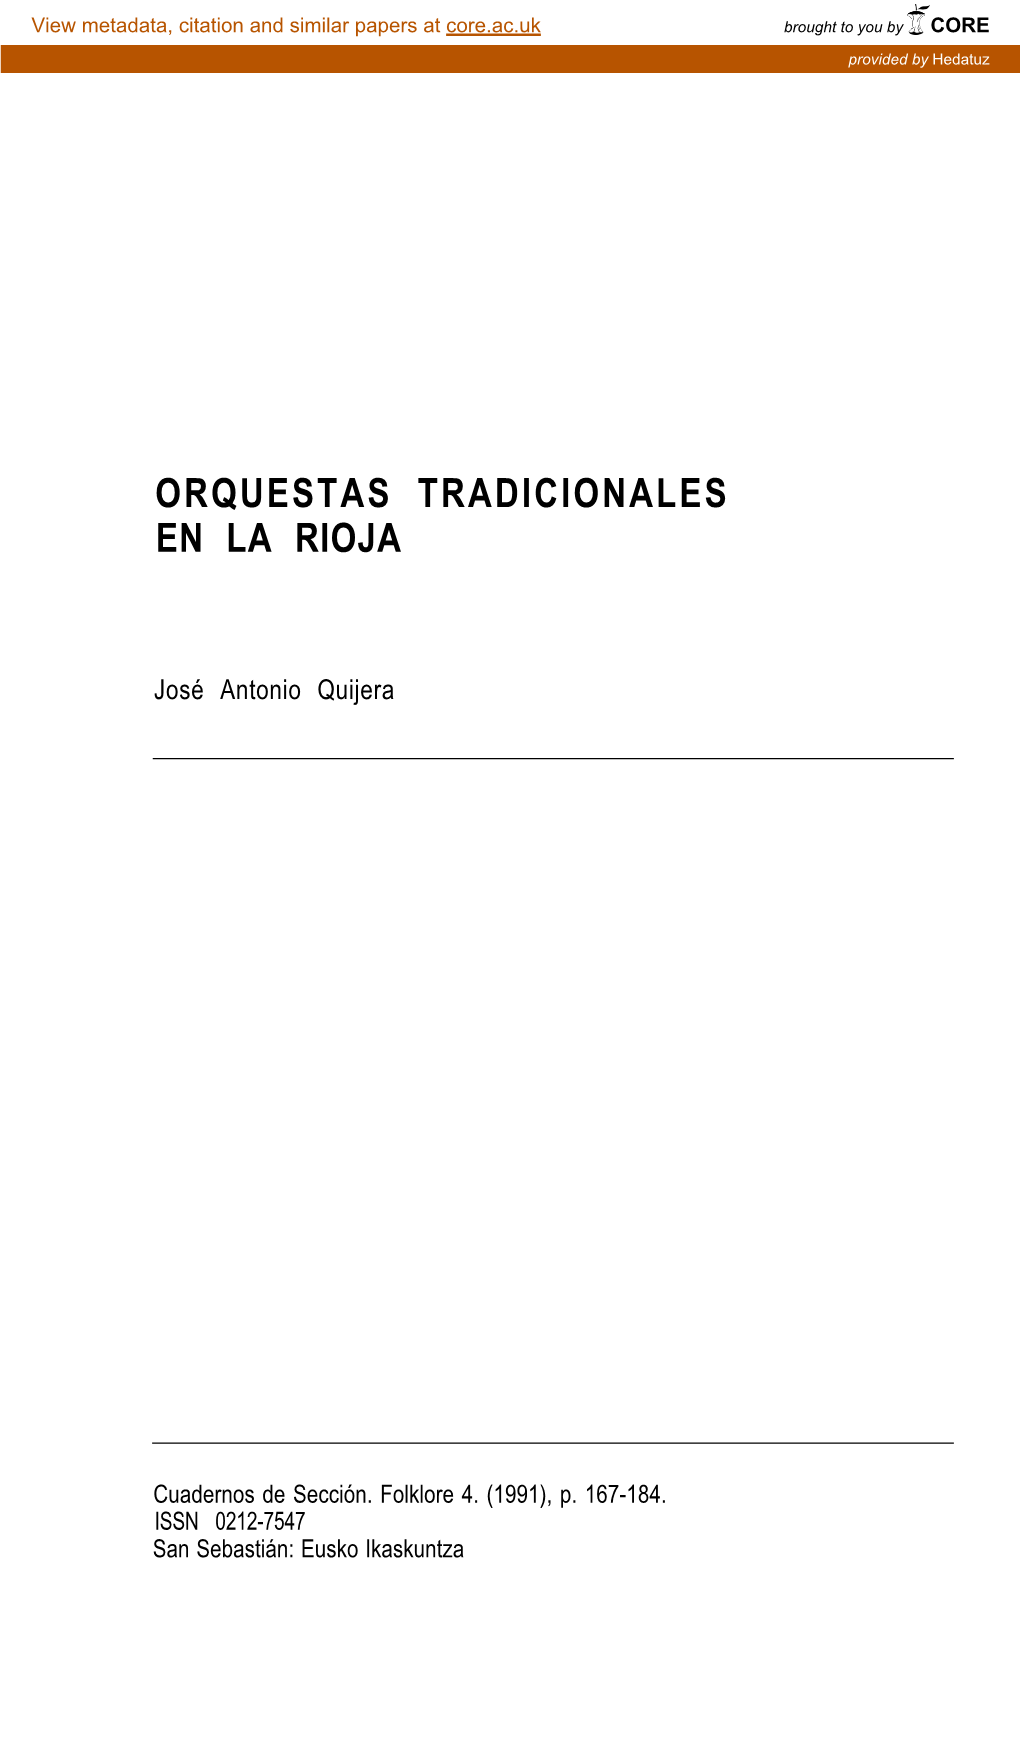 Orquestas Tradicionales En La Rioja